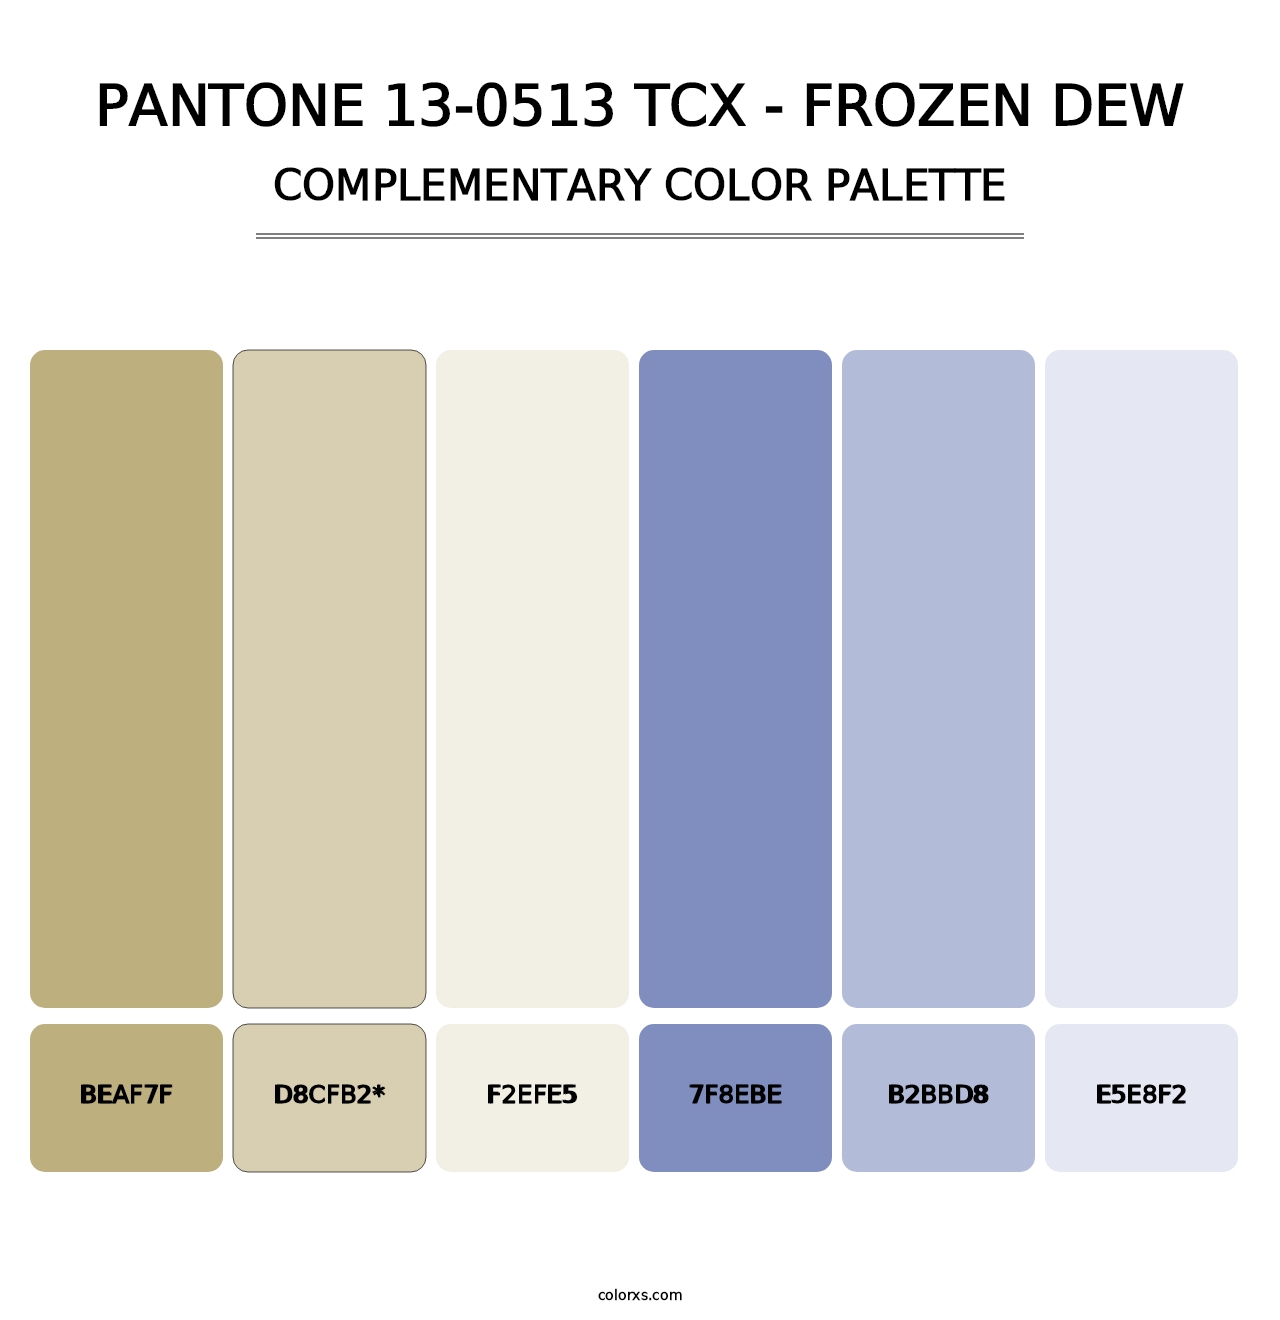 PANTONE 13-0513 TCX - Frozen Dew - Complementary Color Palette